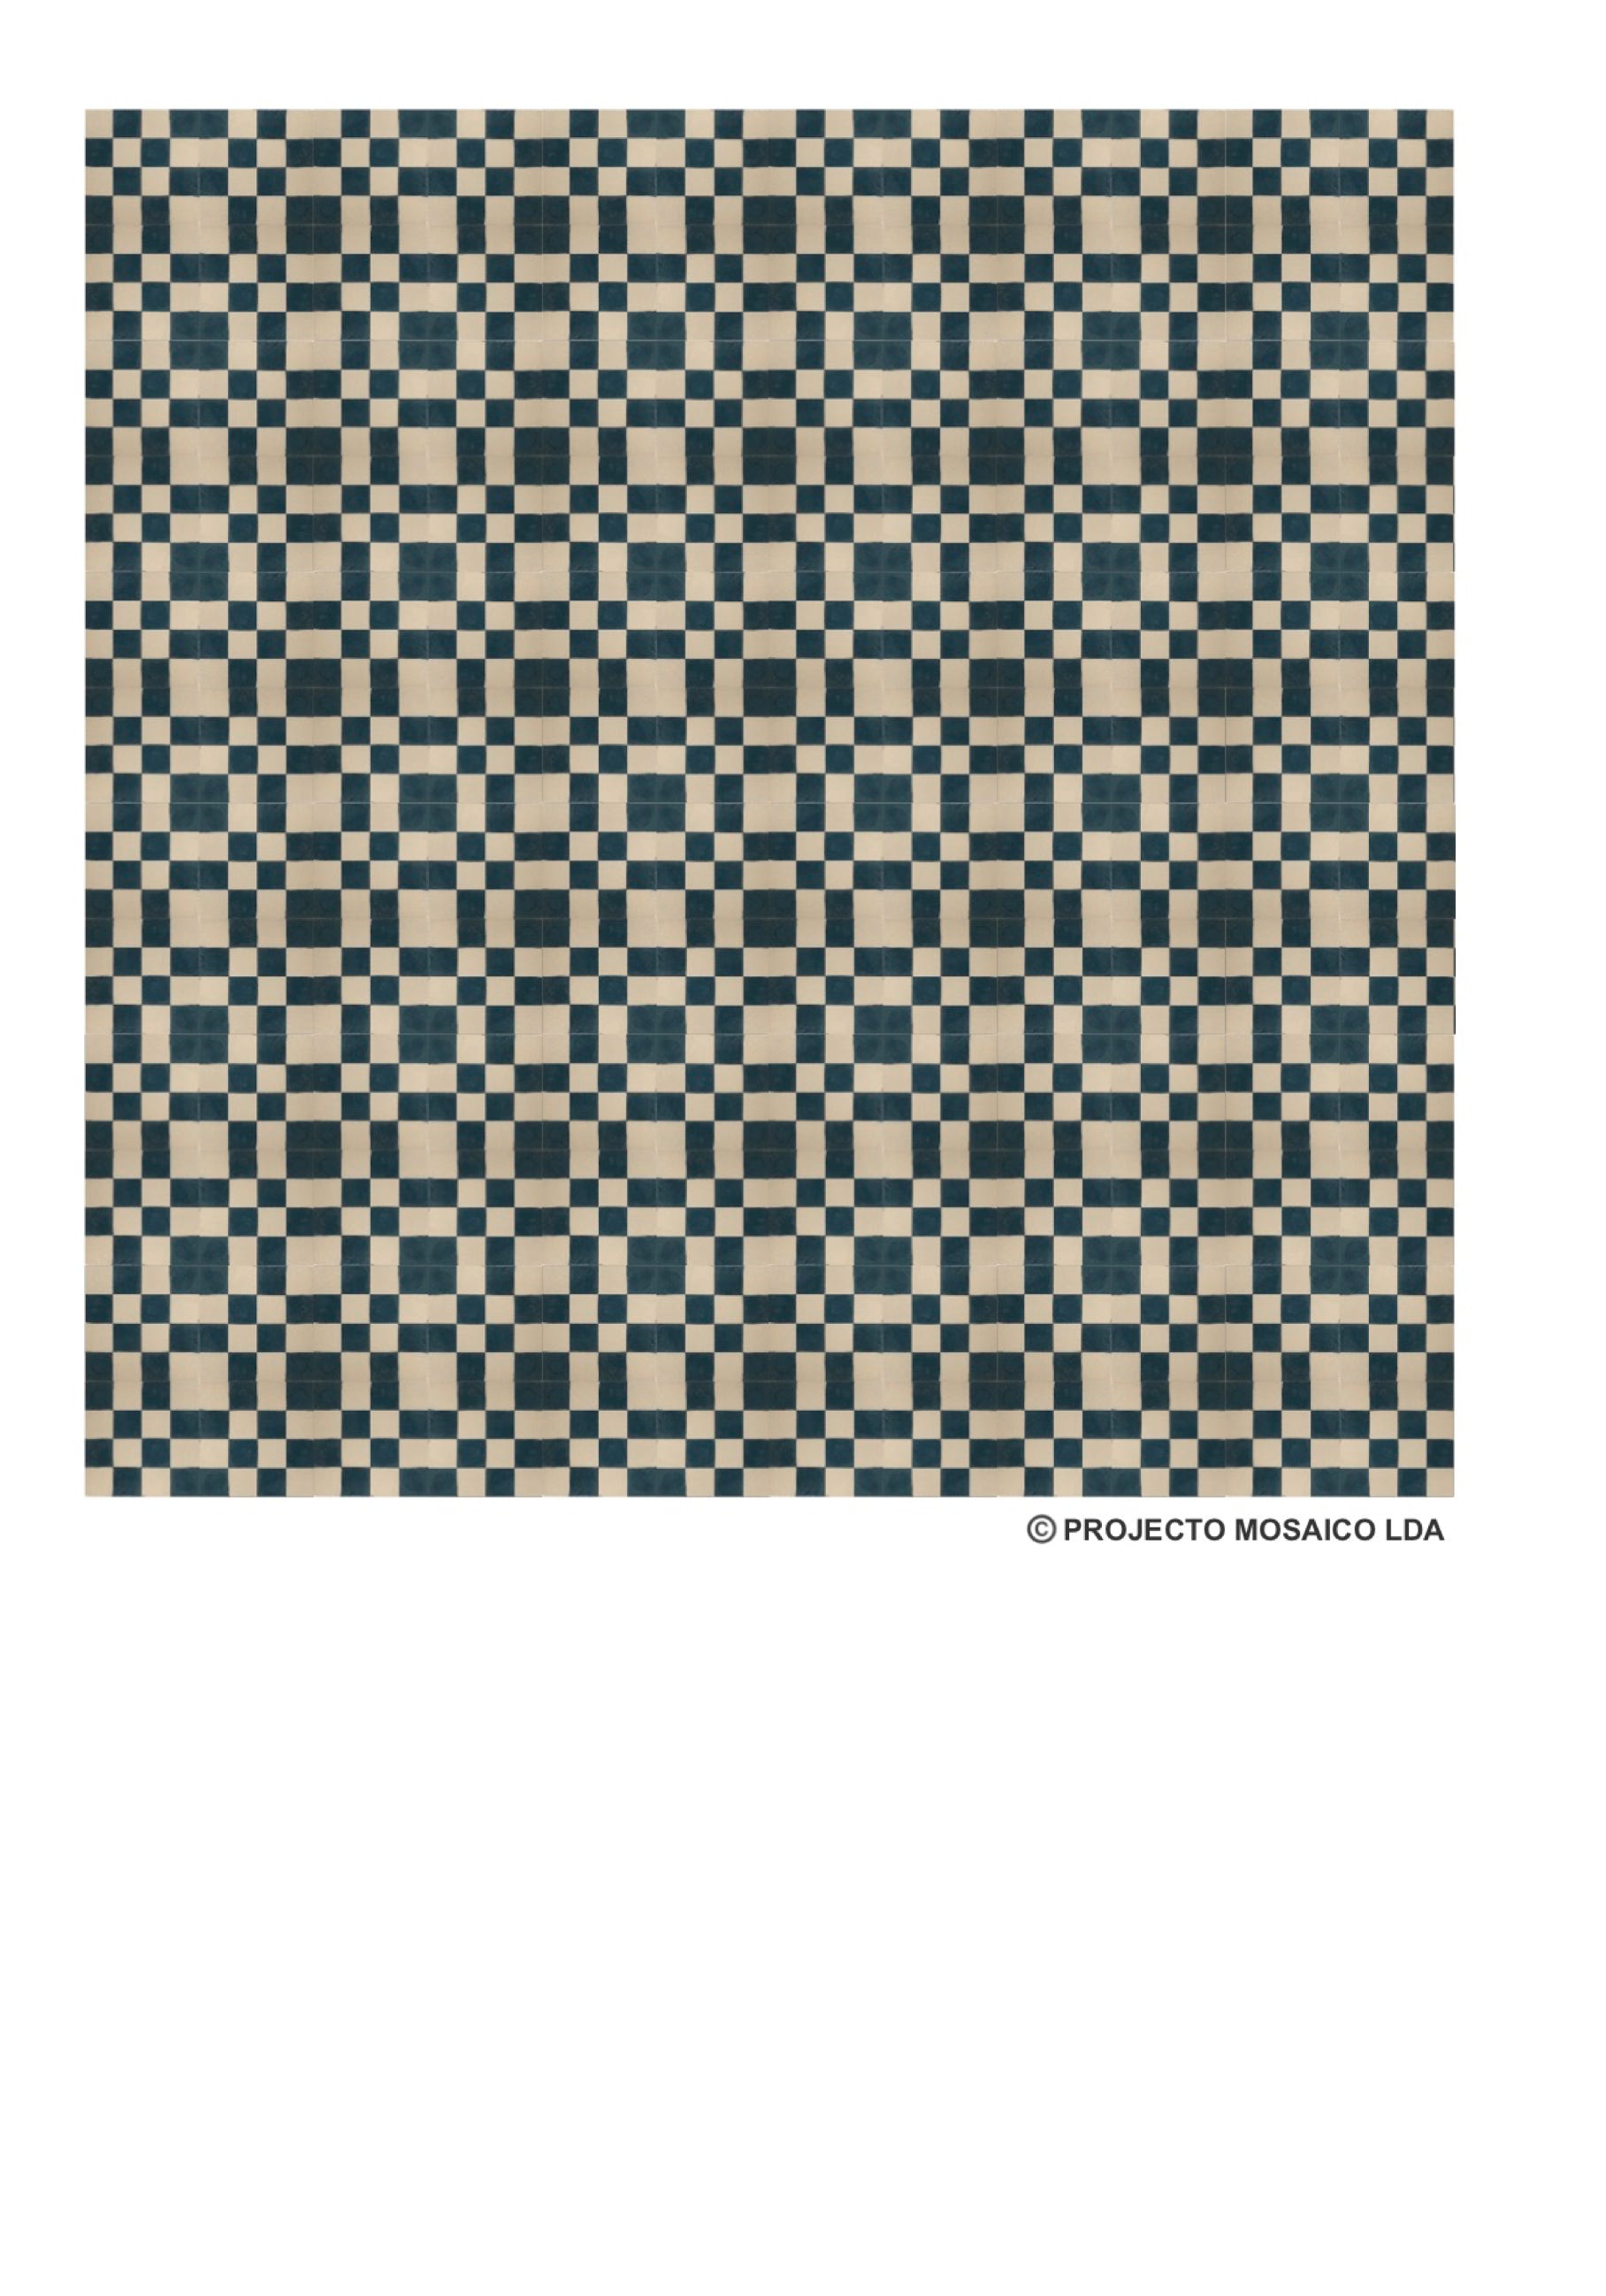 illustração de aplicação do mosaico hidráulico ref: Quadrados P